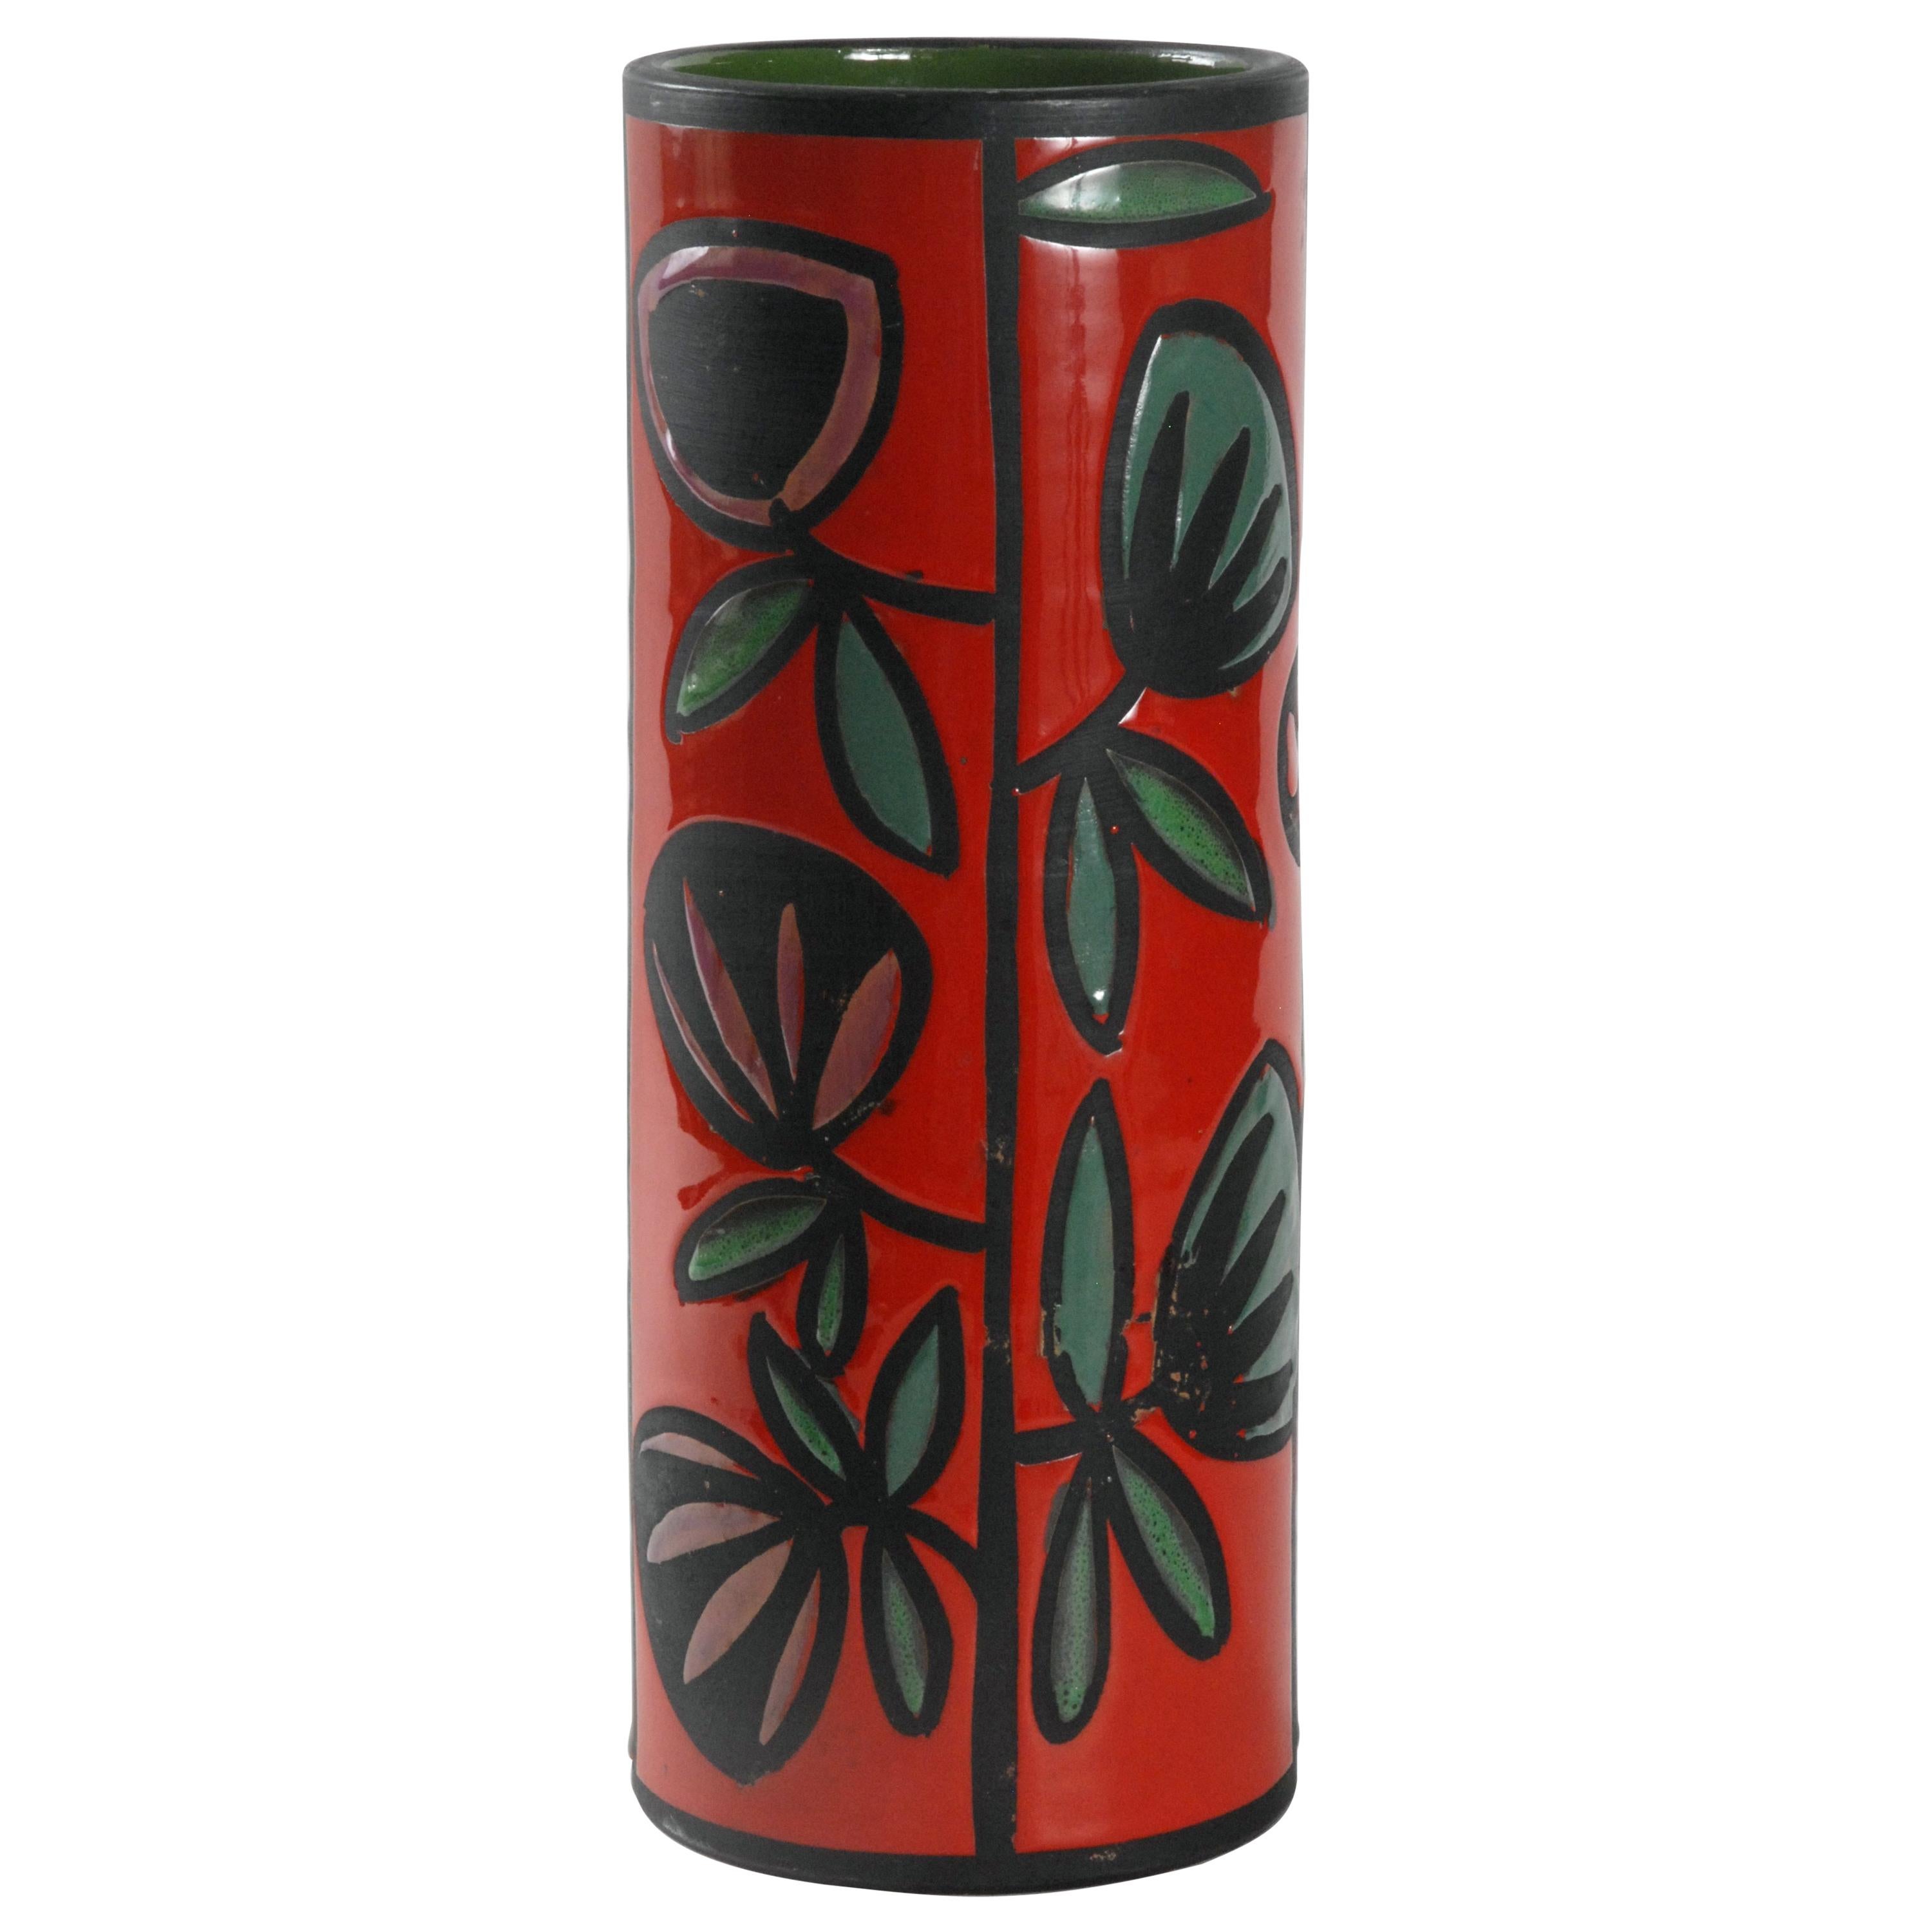 Bagni Ceramiche Tulip Vase by Alvino Bagni, Italy, circa 1970